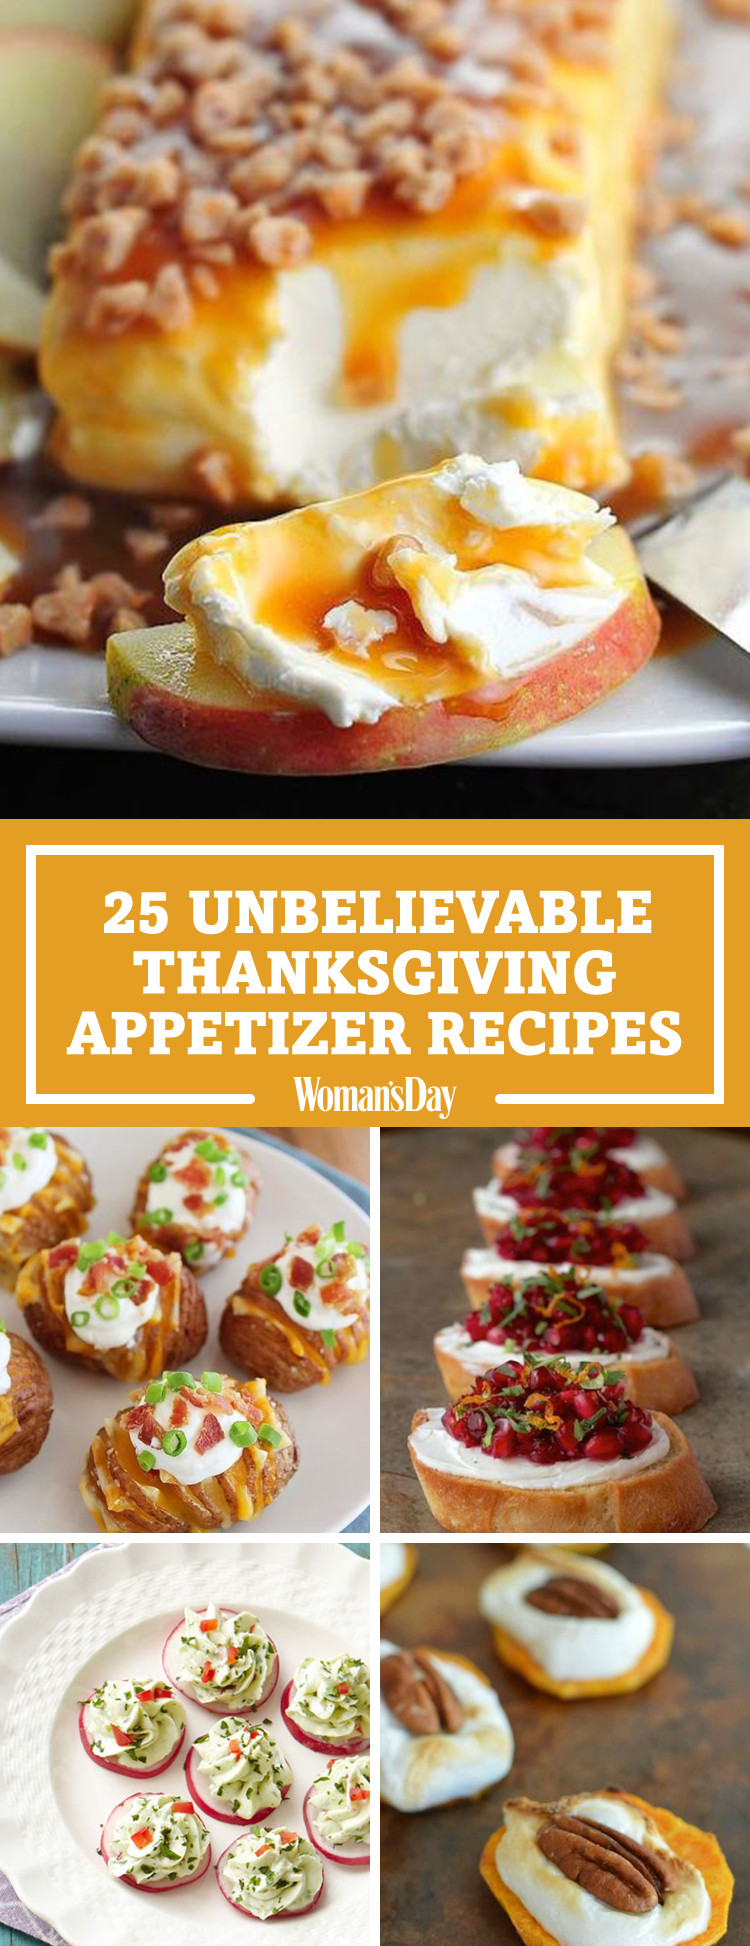 Appetizers For Thanksgiving Dinner Easy
 34 Easy Thanksgiving Appetizers Best Recipes for